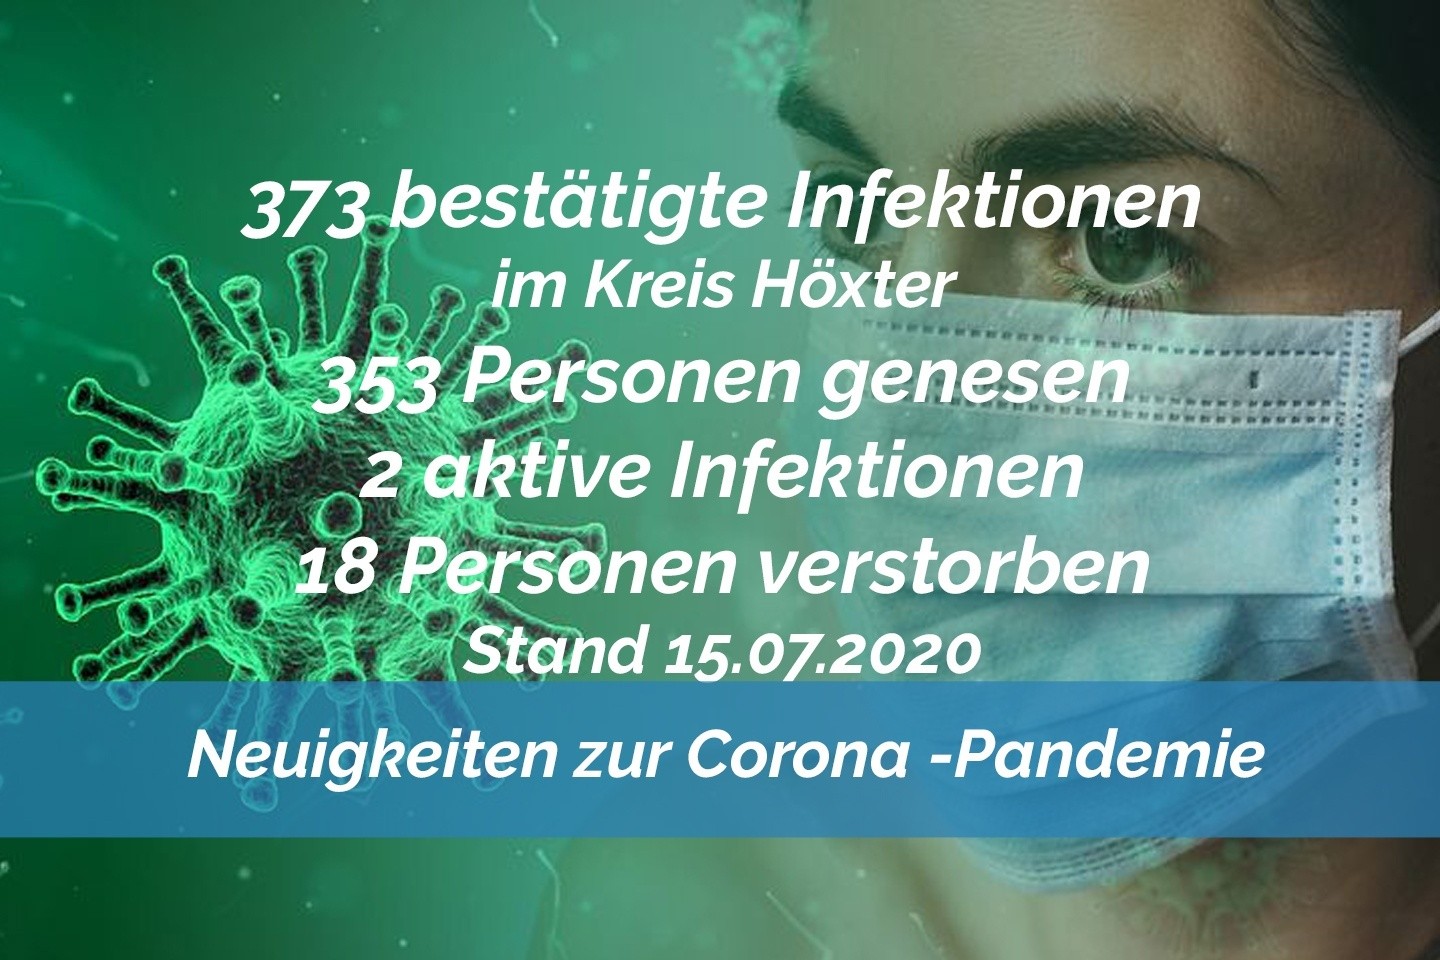 Update vom 15. Juli: 373 bestätigte Infektionen mit dem neuen Coronavirus im Kreis Höxter